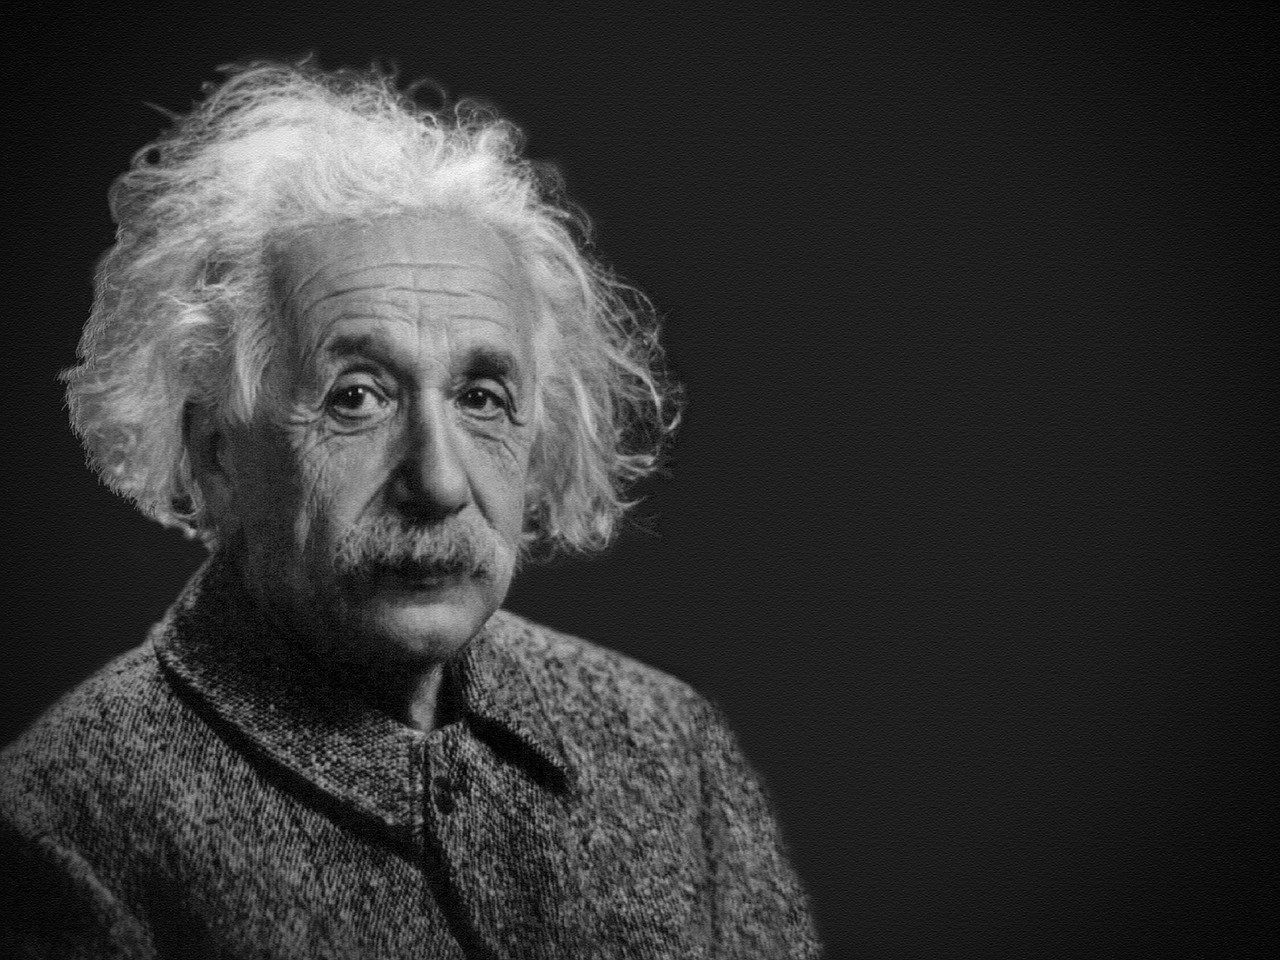 Por trás das fórmulas, a vida de Albert Einstein